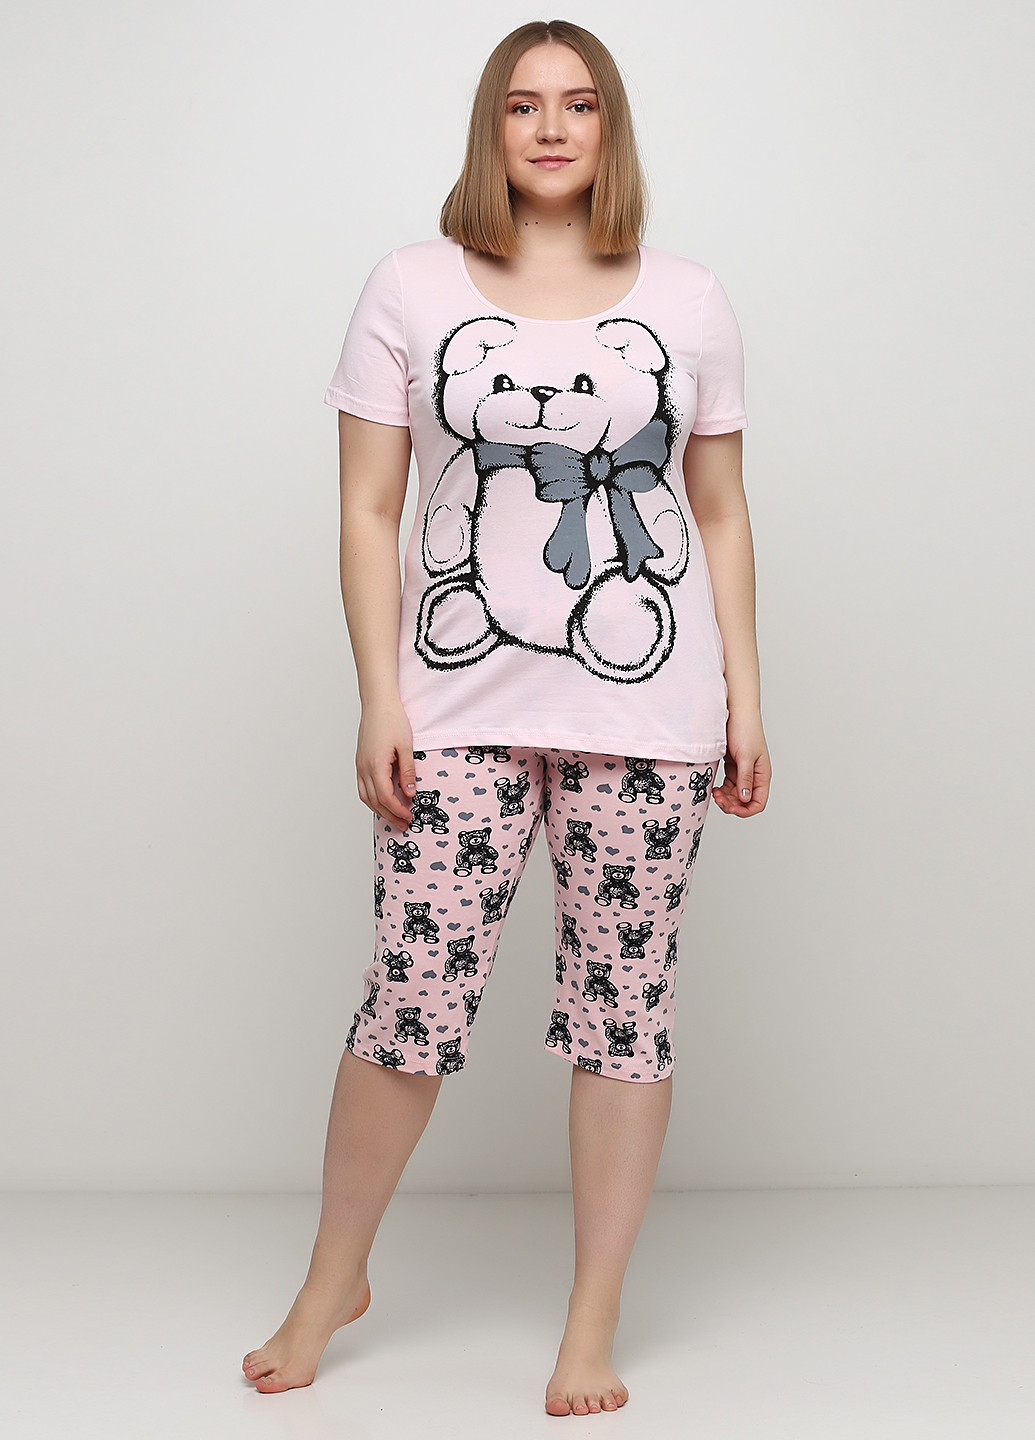 Розовая всесезон пижама (футболка, бриджи) футболка + бриджи Sexen